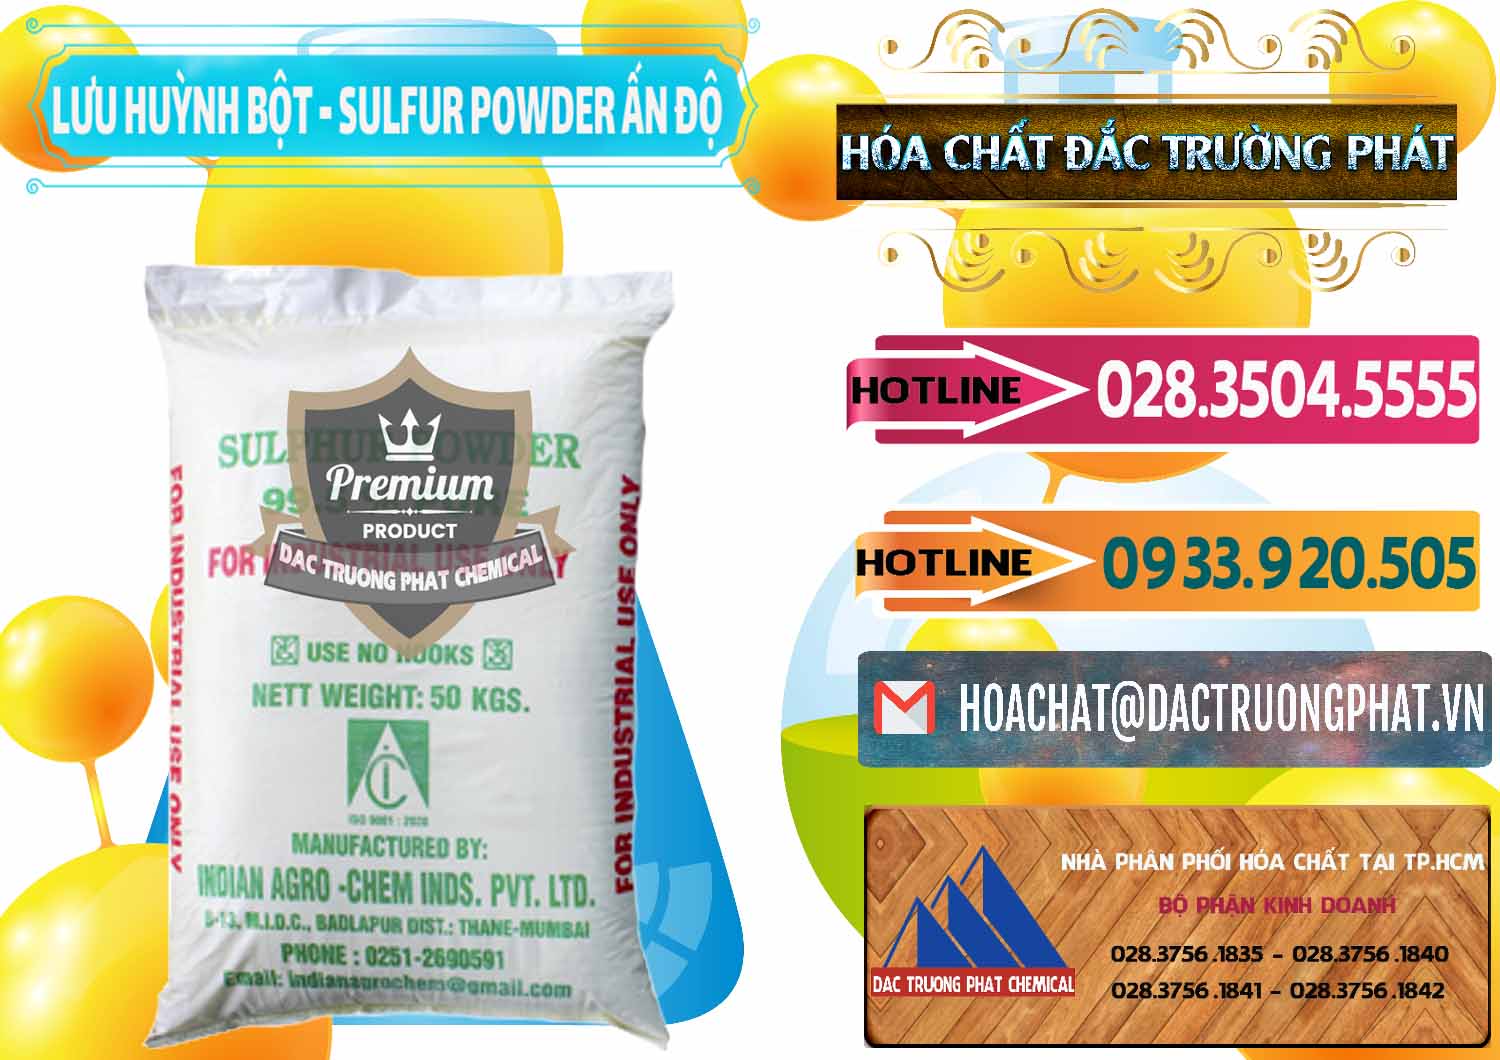 Cty kinh doanh - bán Lưu huỳnh Bột - Sulfur Powder Ấn Độ India - 0347 - Nhà cung ứng và phân phối hóa chất tại TP.HCM - dactruongphat.vn